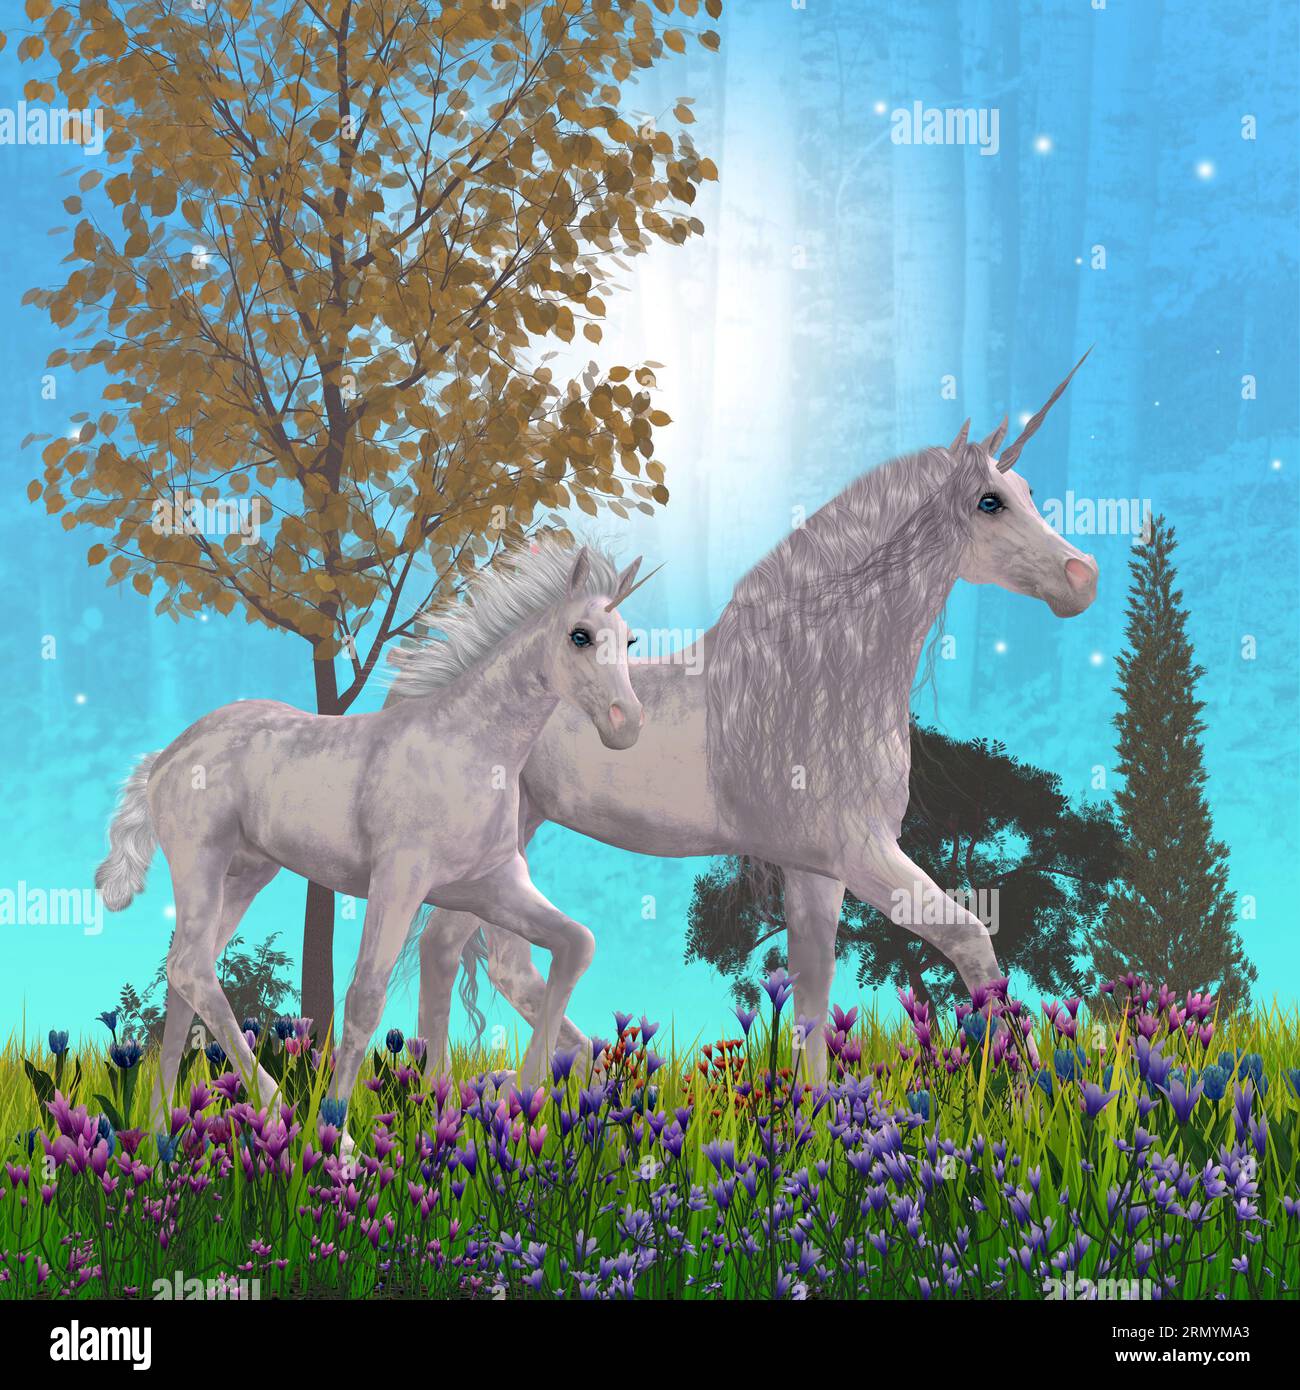 Notte dell'Unicorno con stelle blu - Una leggendaria mare dell'unicorno e la sua pranza puledrica lungo un sentiero illuminato dalla luna attraverso una foresta piena di fiori. Foto Stock